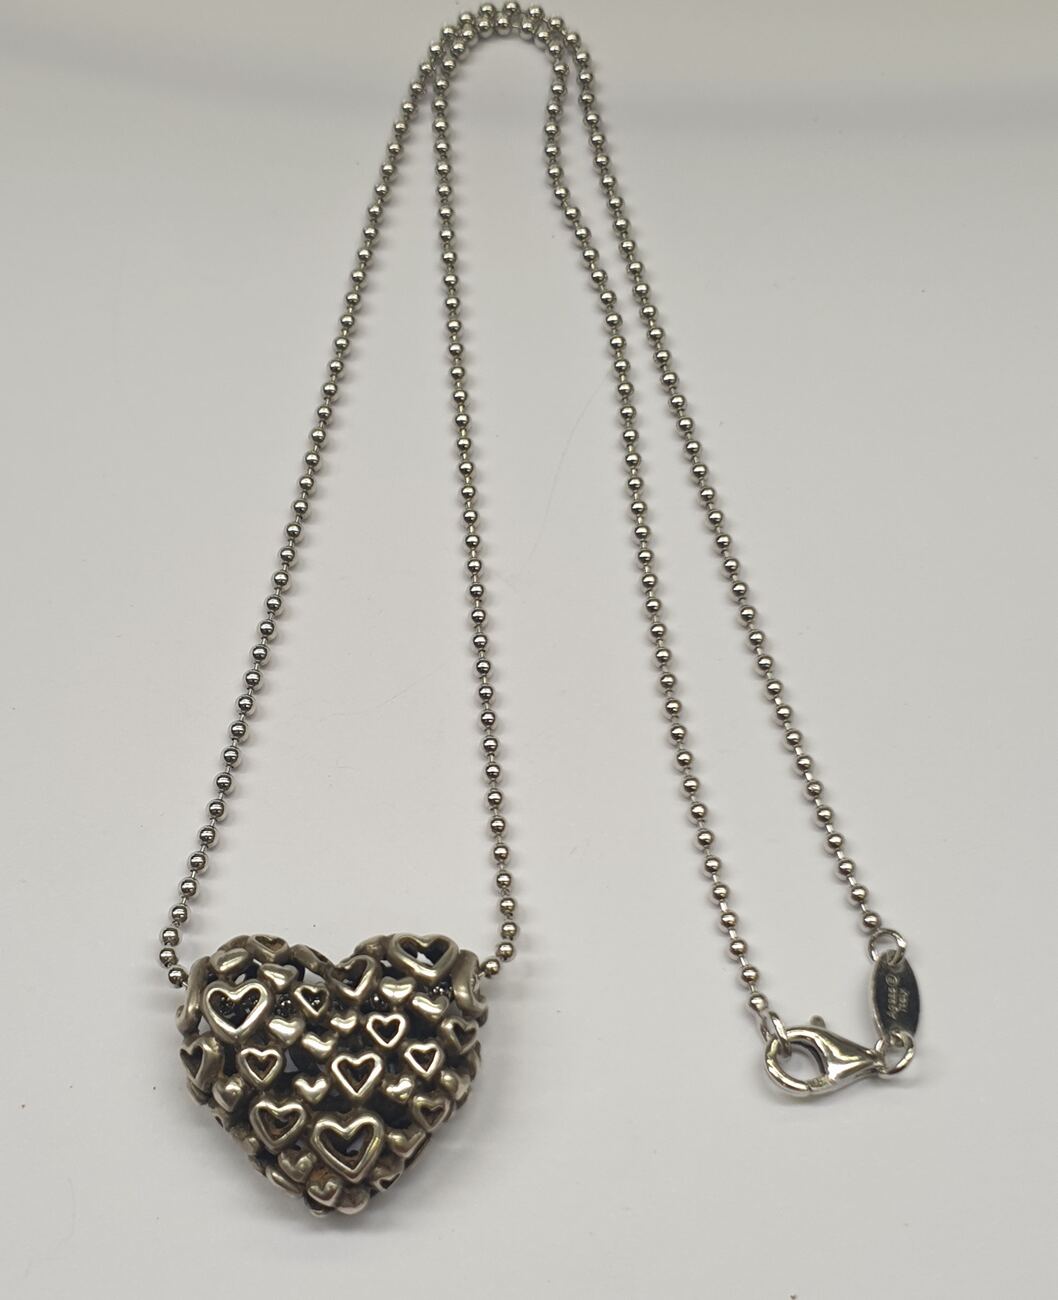 Silberkette 925er Silber getragen, | Engelsrufer Italy 1998 Herz mit mit Anhänger, MA-Shops Kette Designerschmuck Herzanhänger Kette Gebrauchsspuren